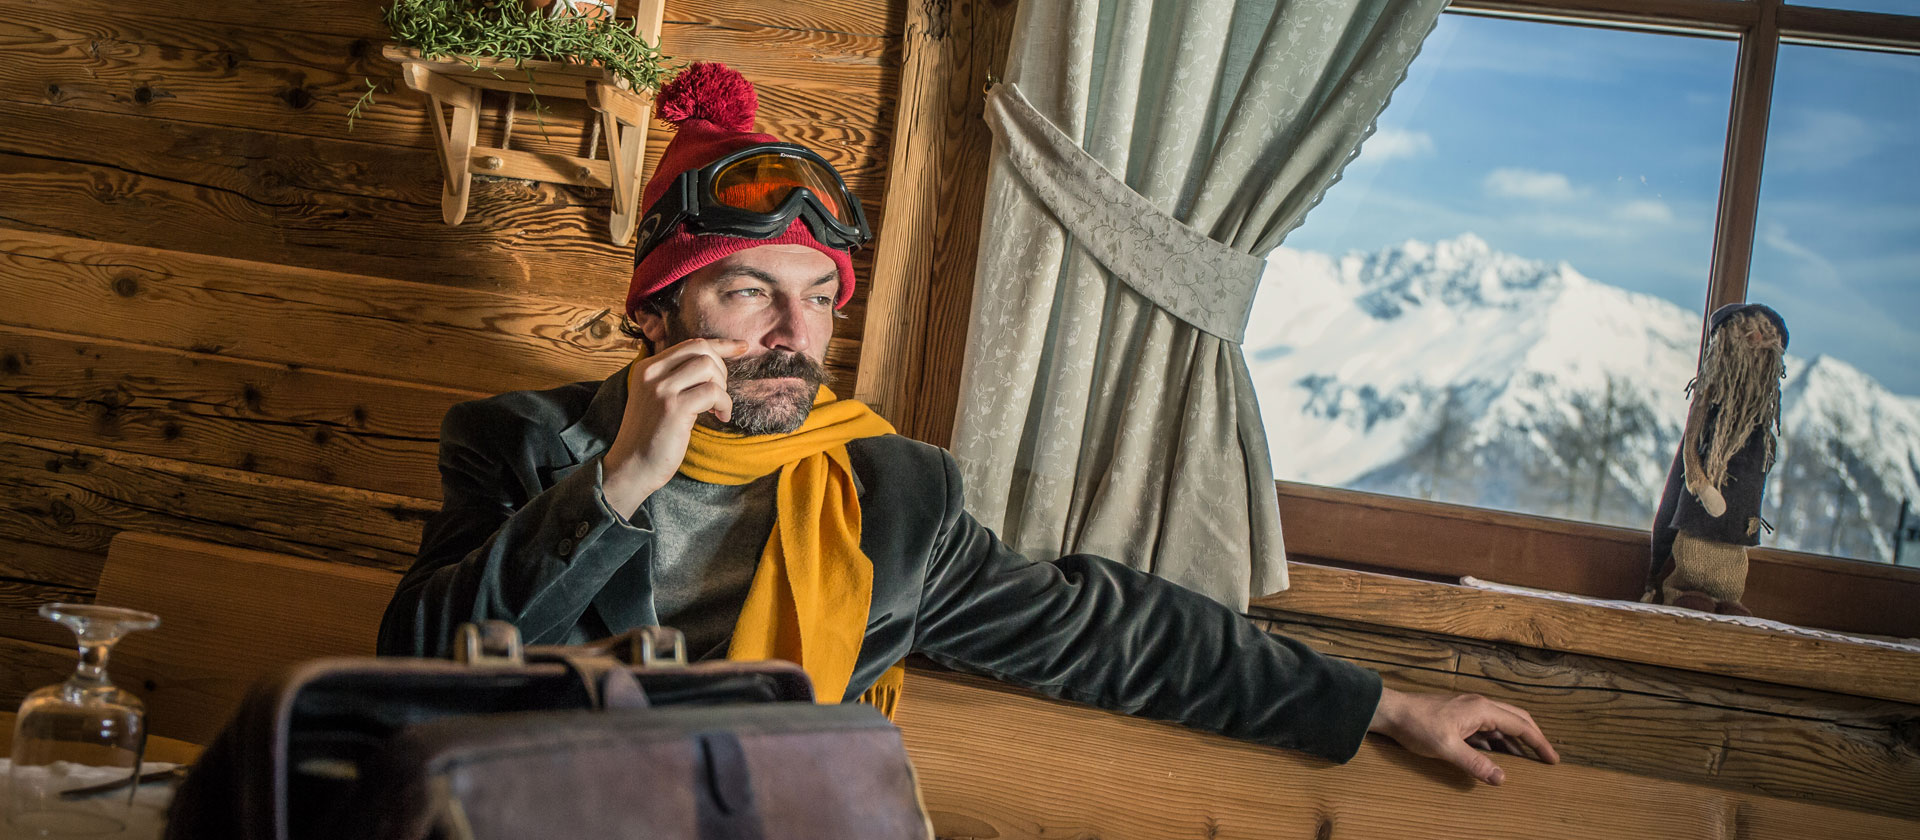 Hotel mit Schuhwärmern ausgestatteten Skiraum abgeben im Val di Sole - Trentino